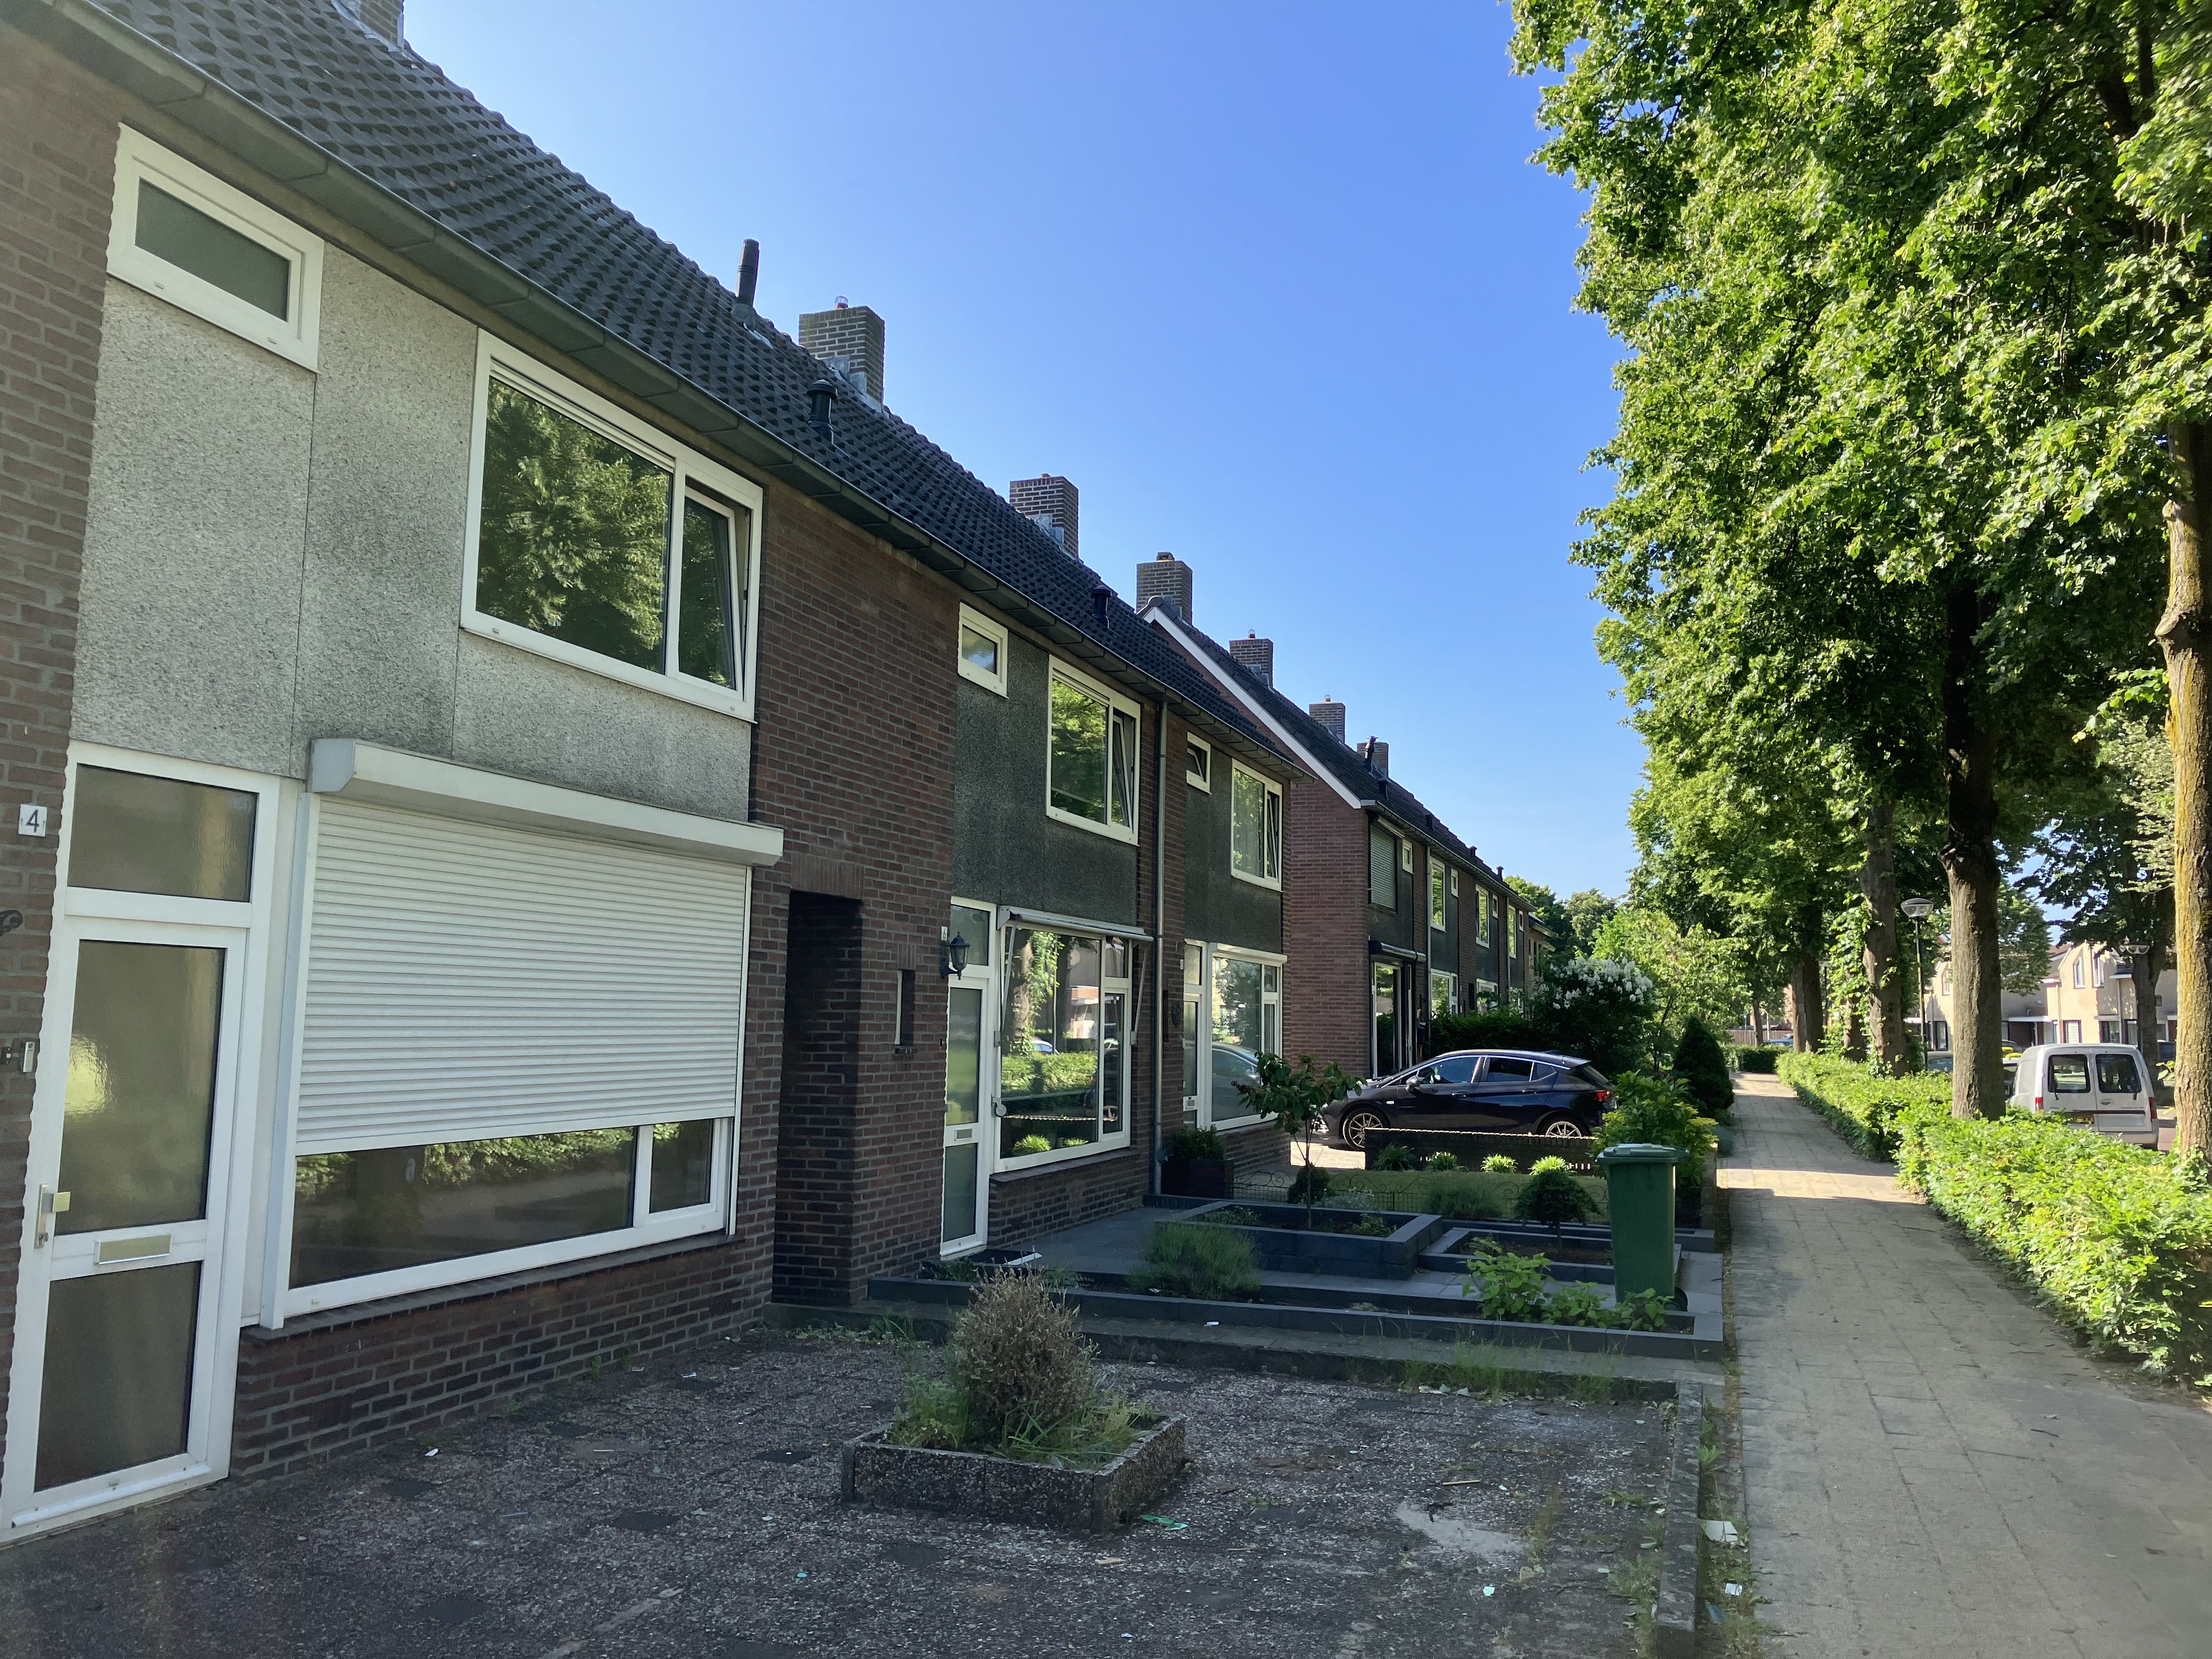 Aabeekstraat 4, 5051 VP Goirle, Nederland